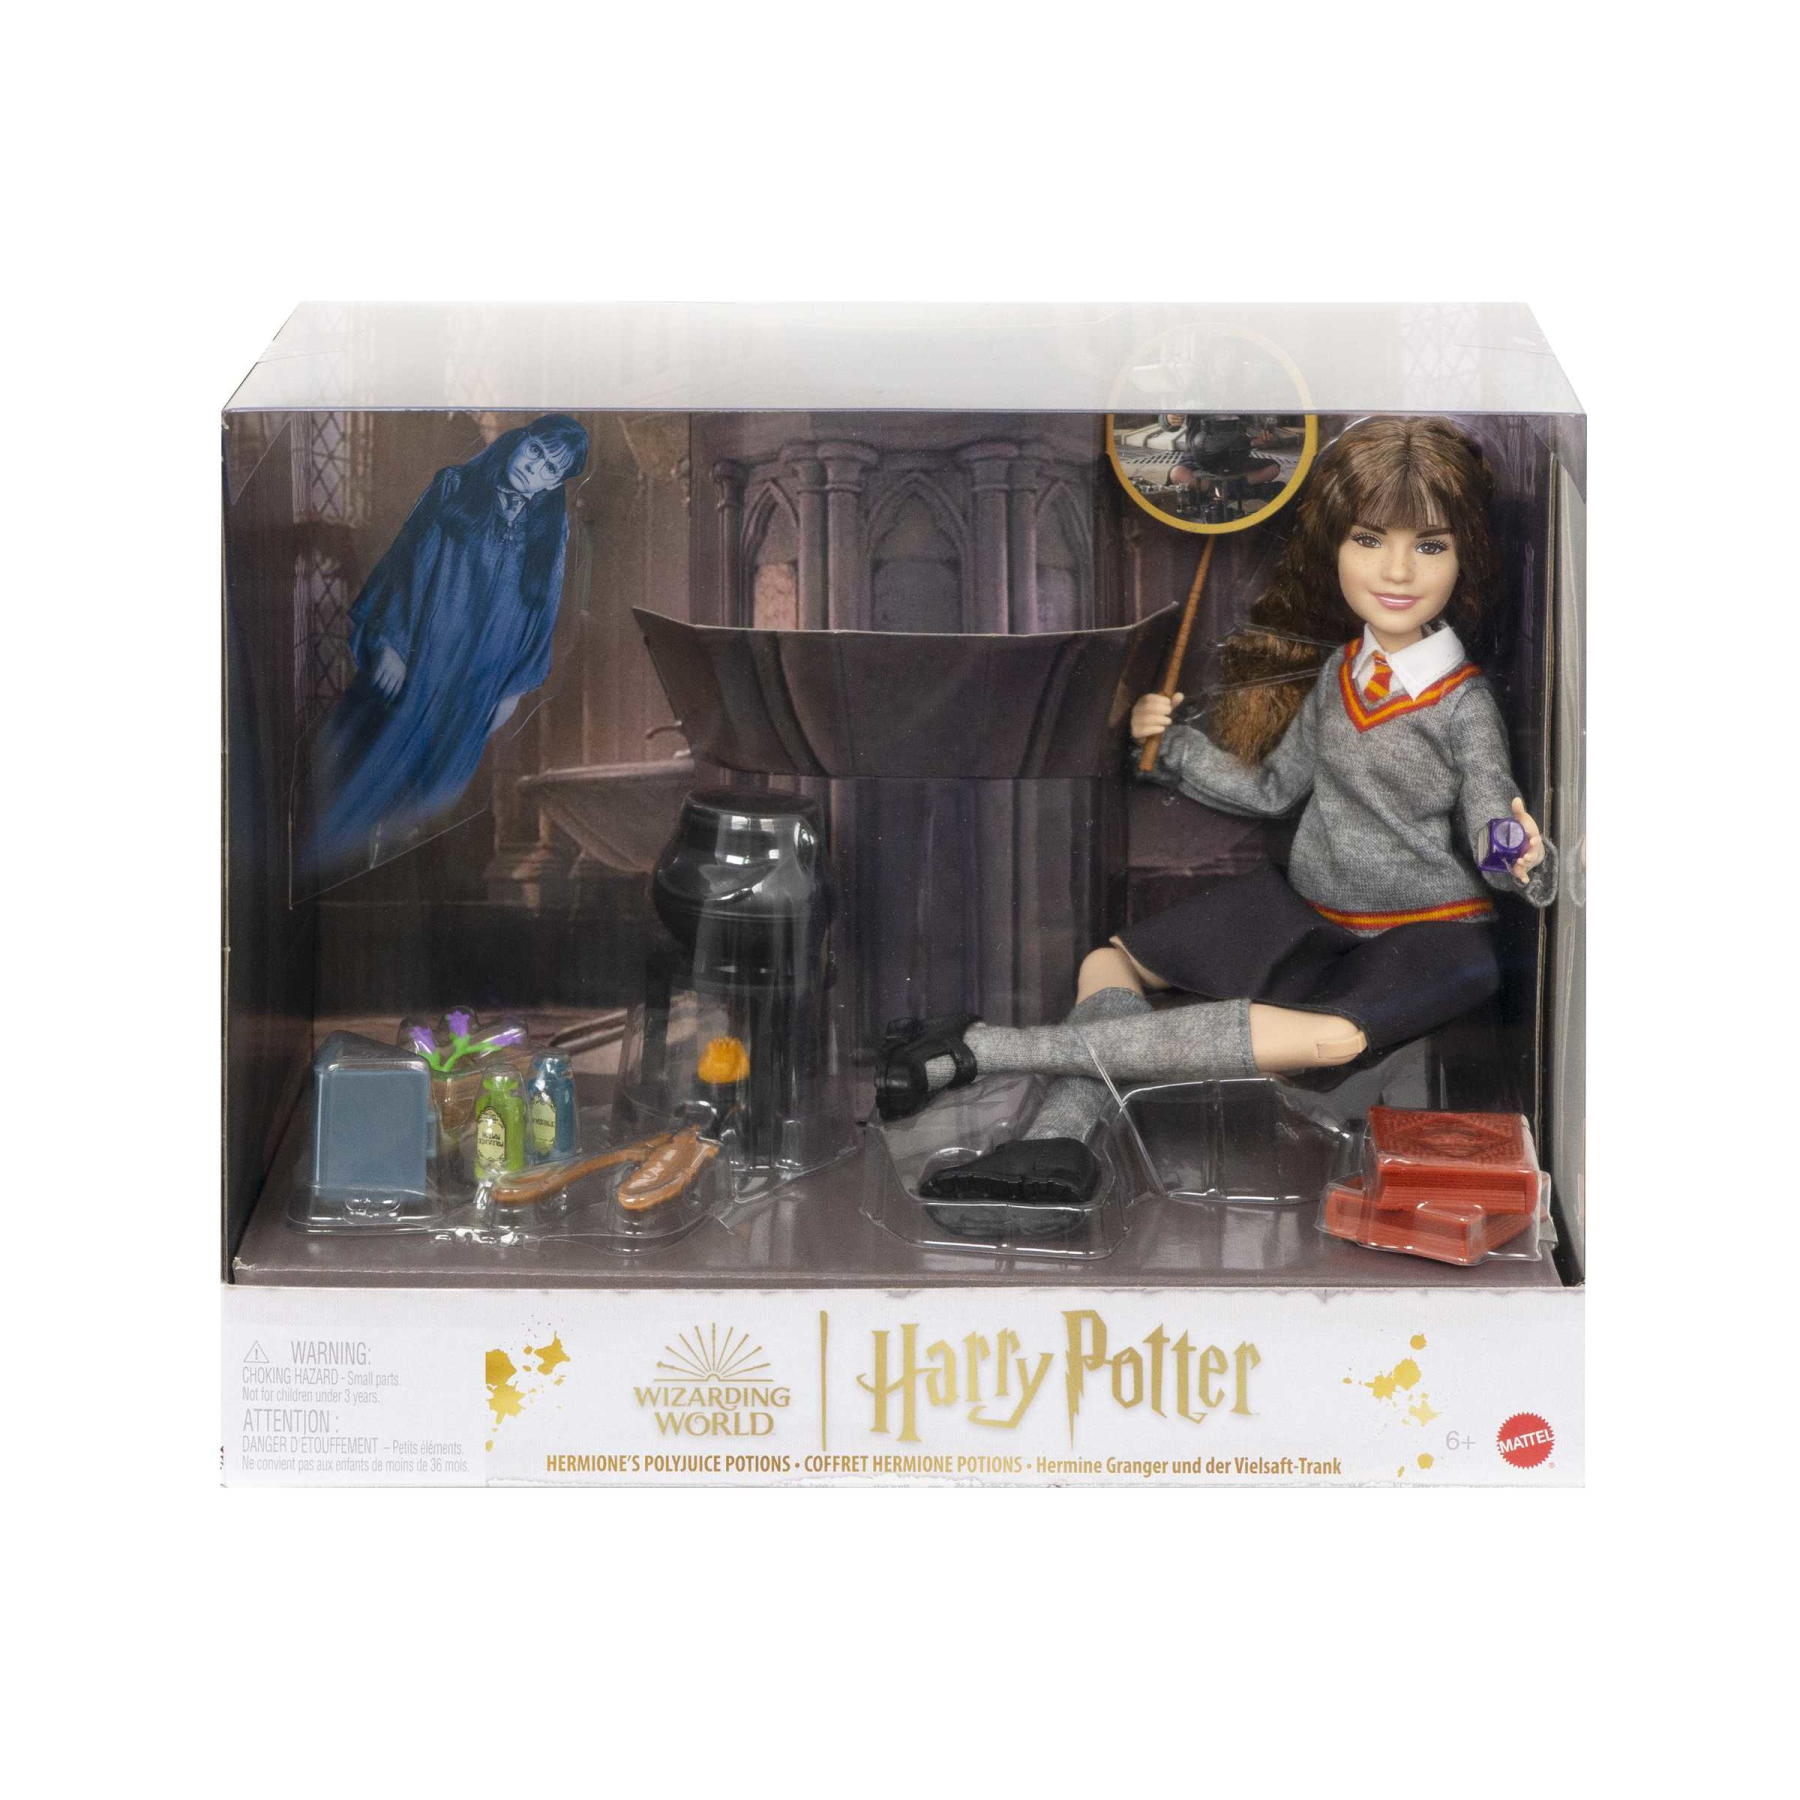 Harry potter hermione e la pozione polisucco, playset con bambola hermione granger in uniforme di hogwarts e accessori, giocattolo per bambini dai 6 anni in su - Harry Potter